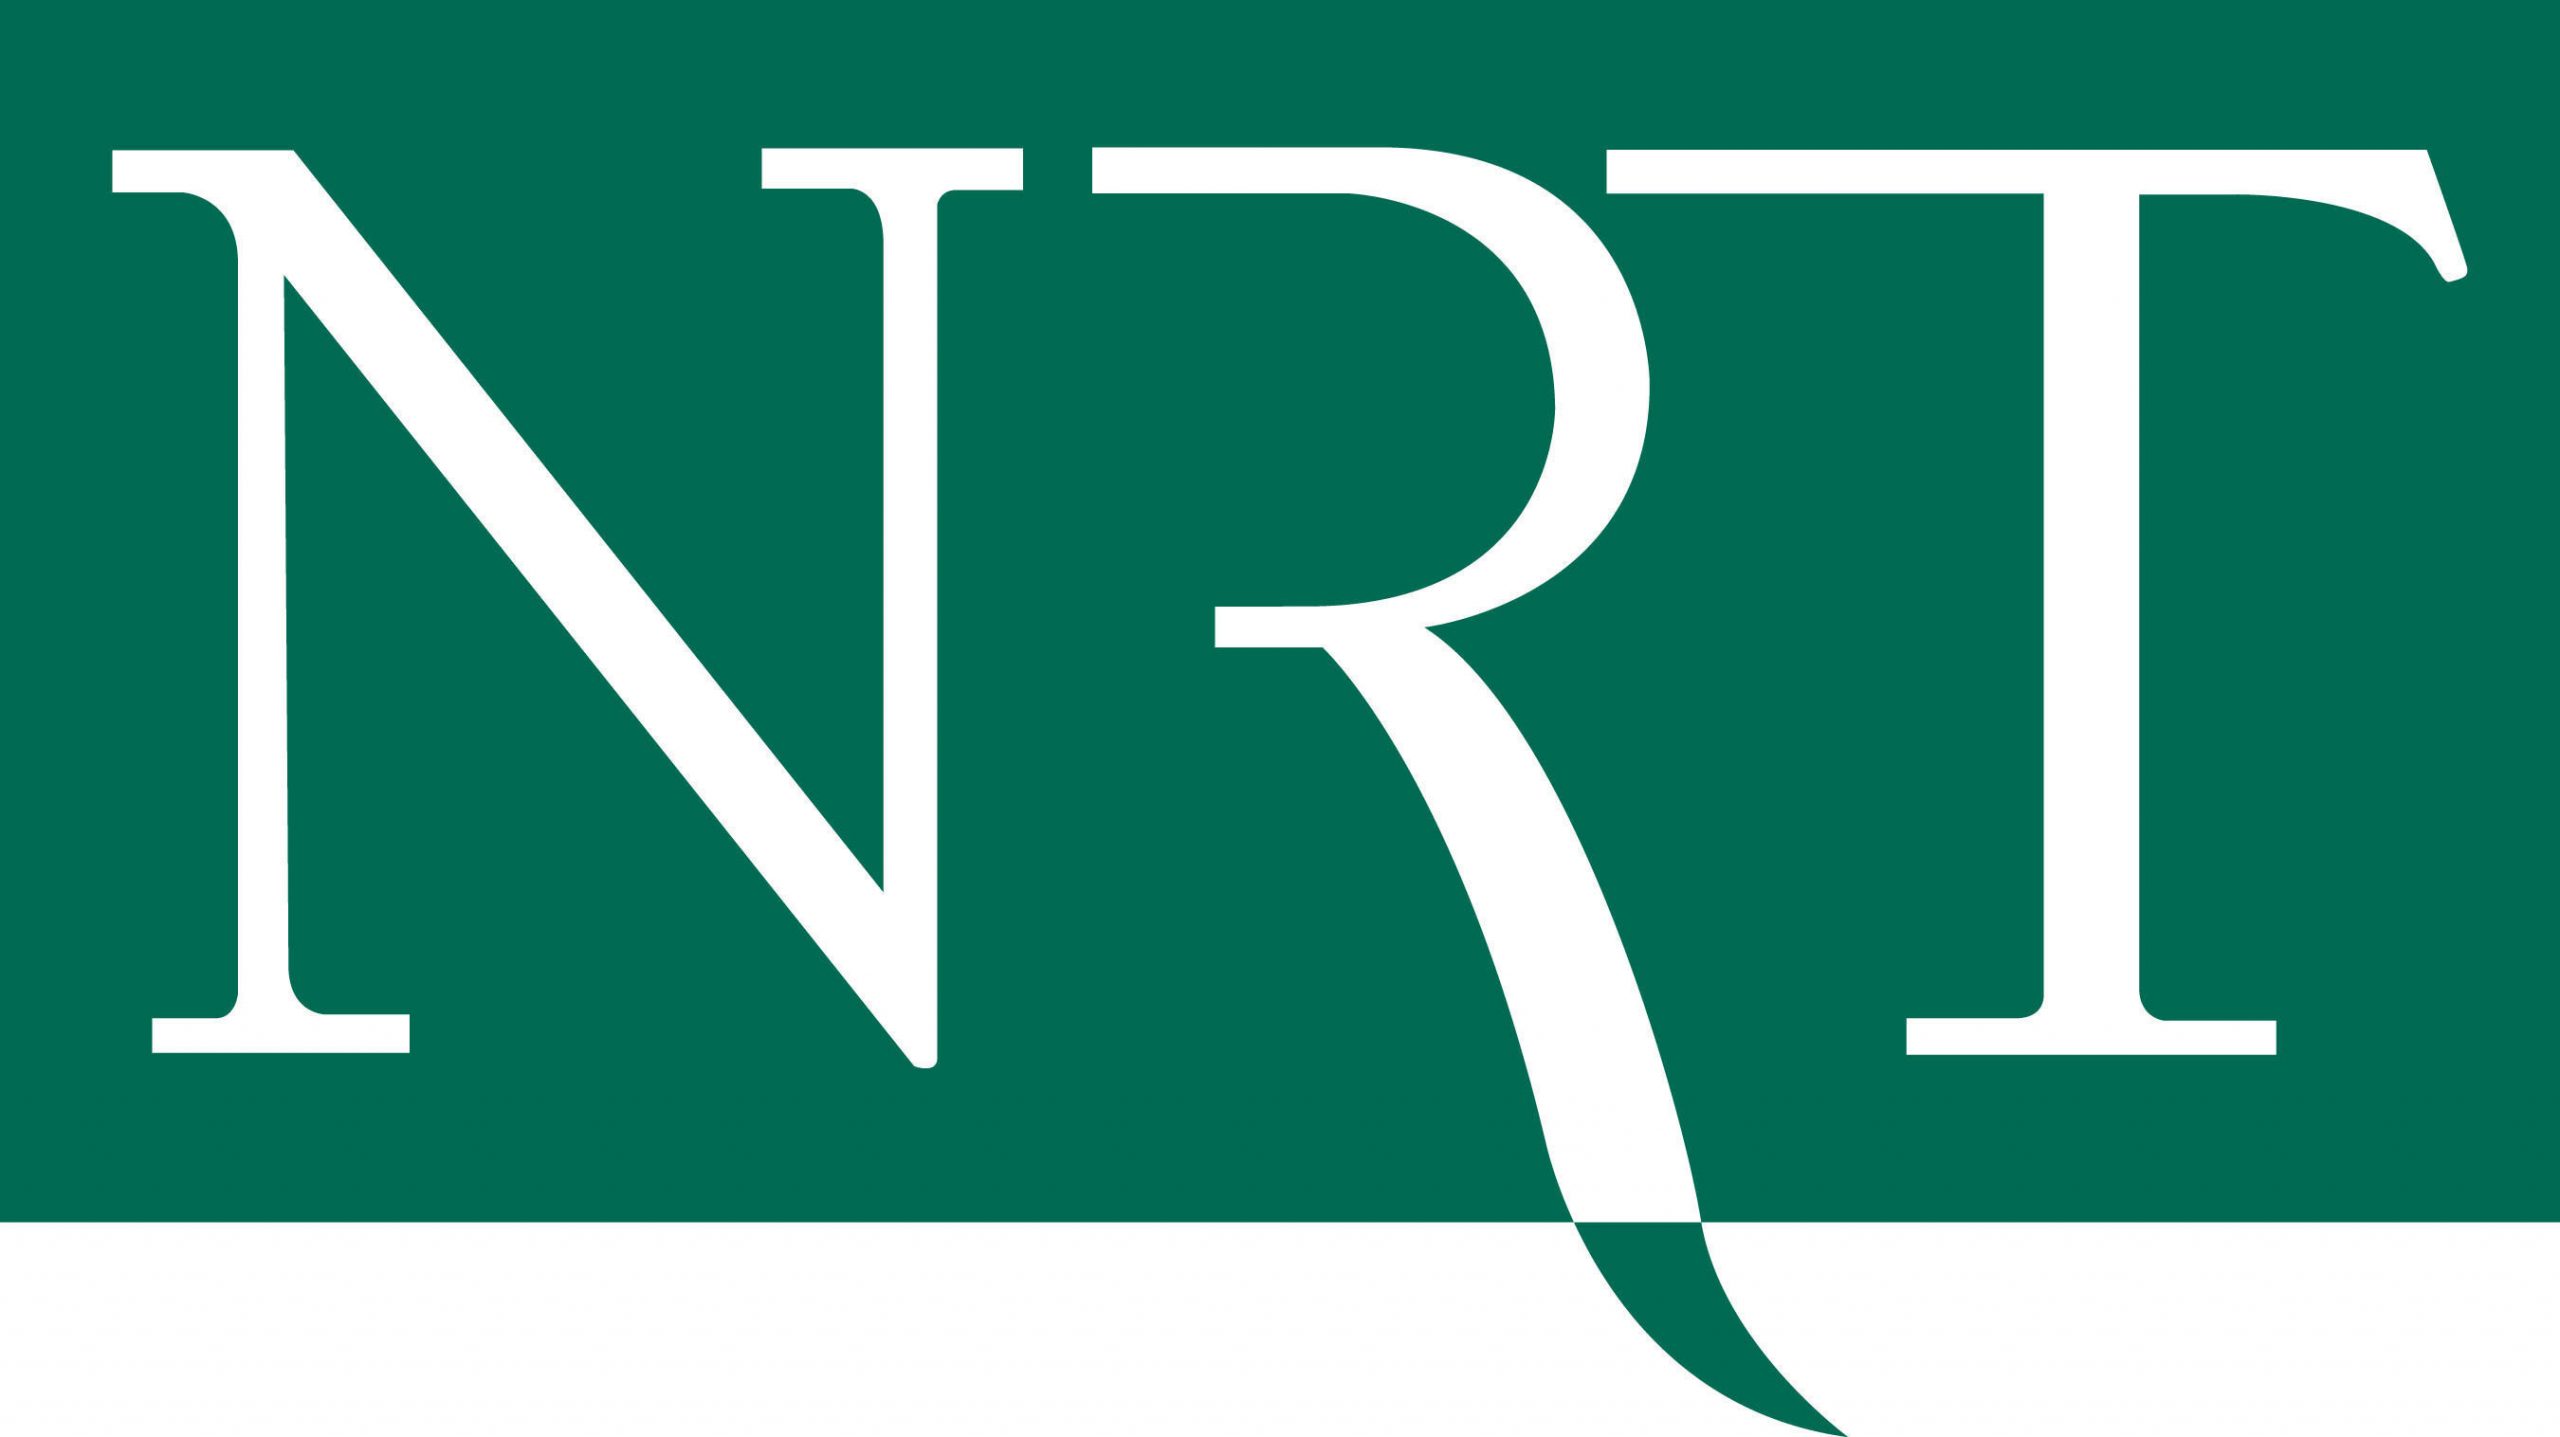 NRT logo. (PRNewsFoto/NRT) (PRNewsFoto/NRT LLC)